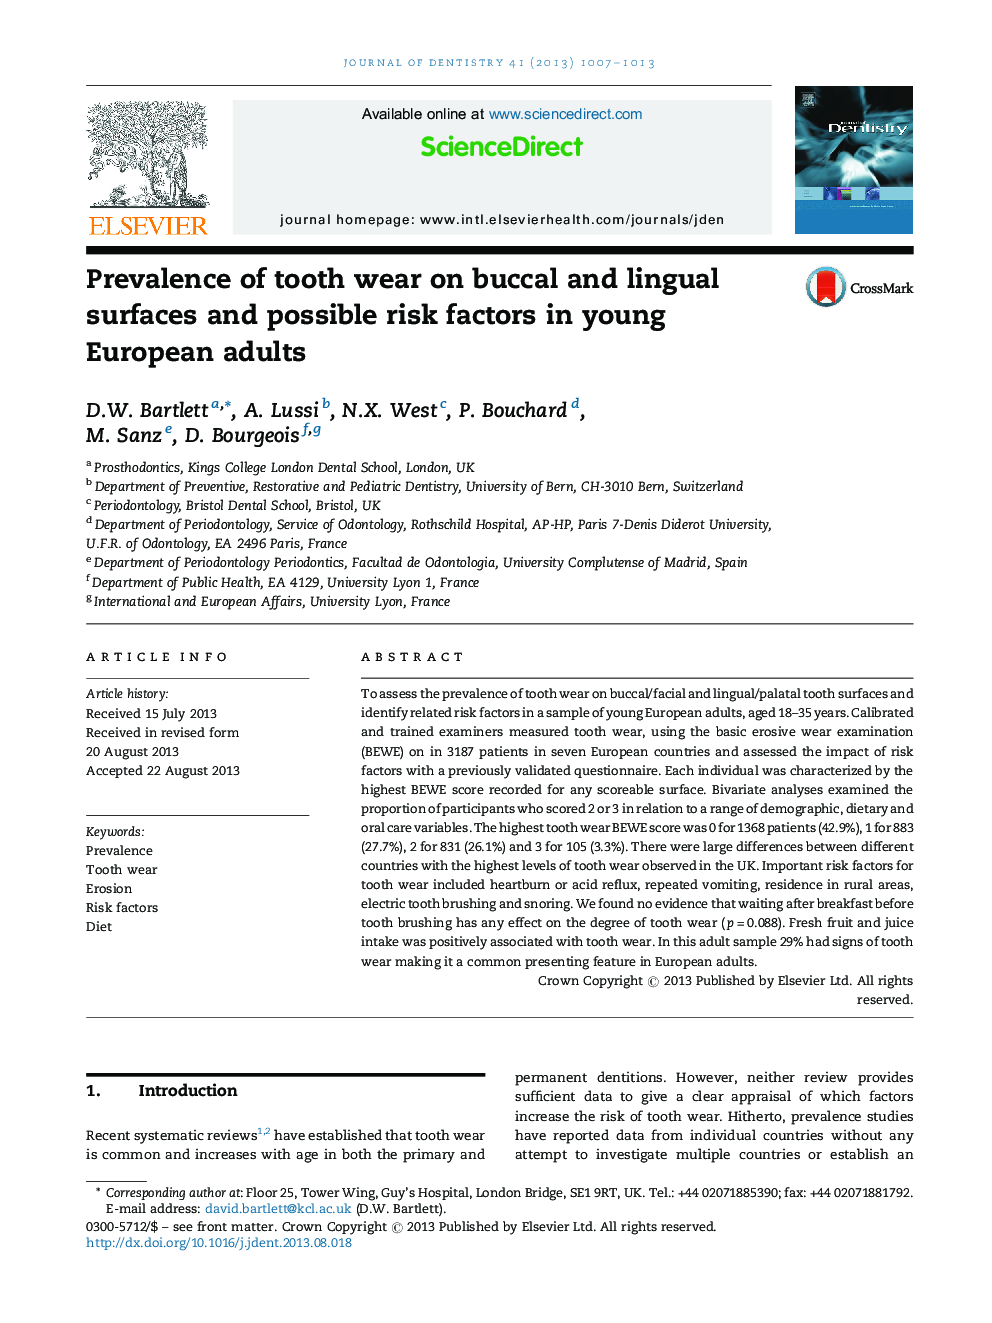 شیوع دندان در سطوح باکال و زاویه دار و عوامل خطر احتمالی در بزرگسالان جوان اروپایی 